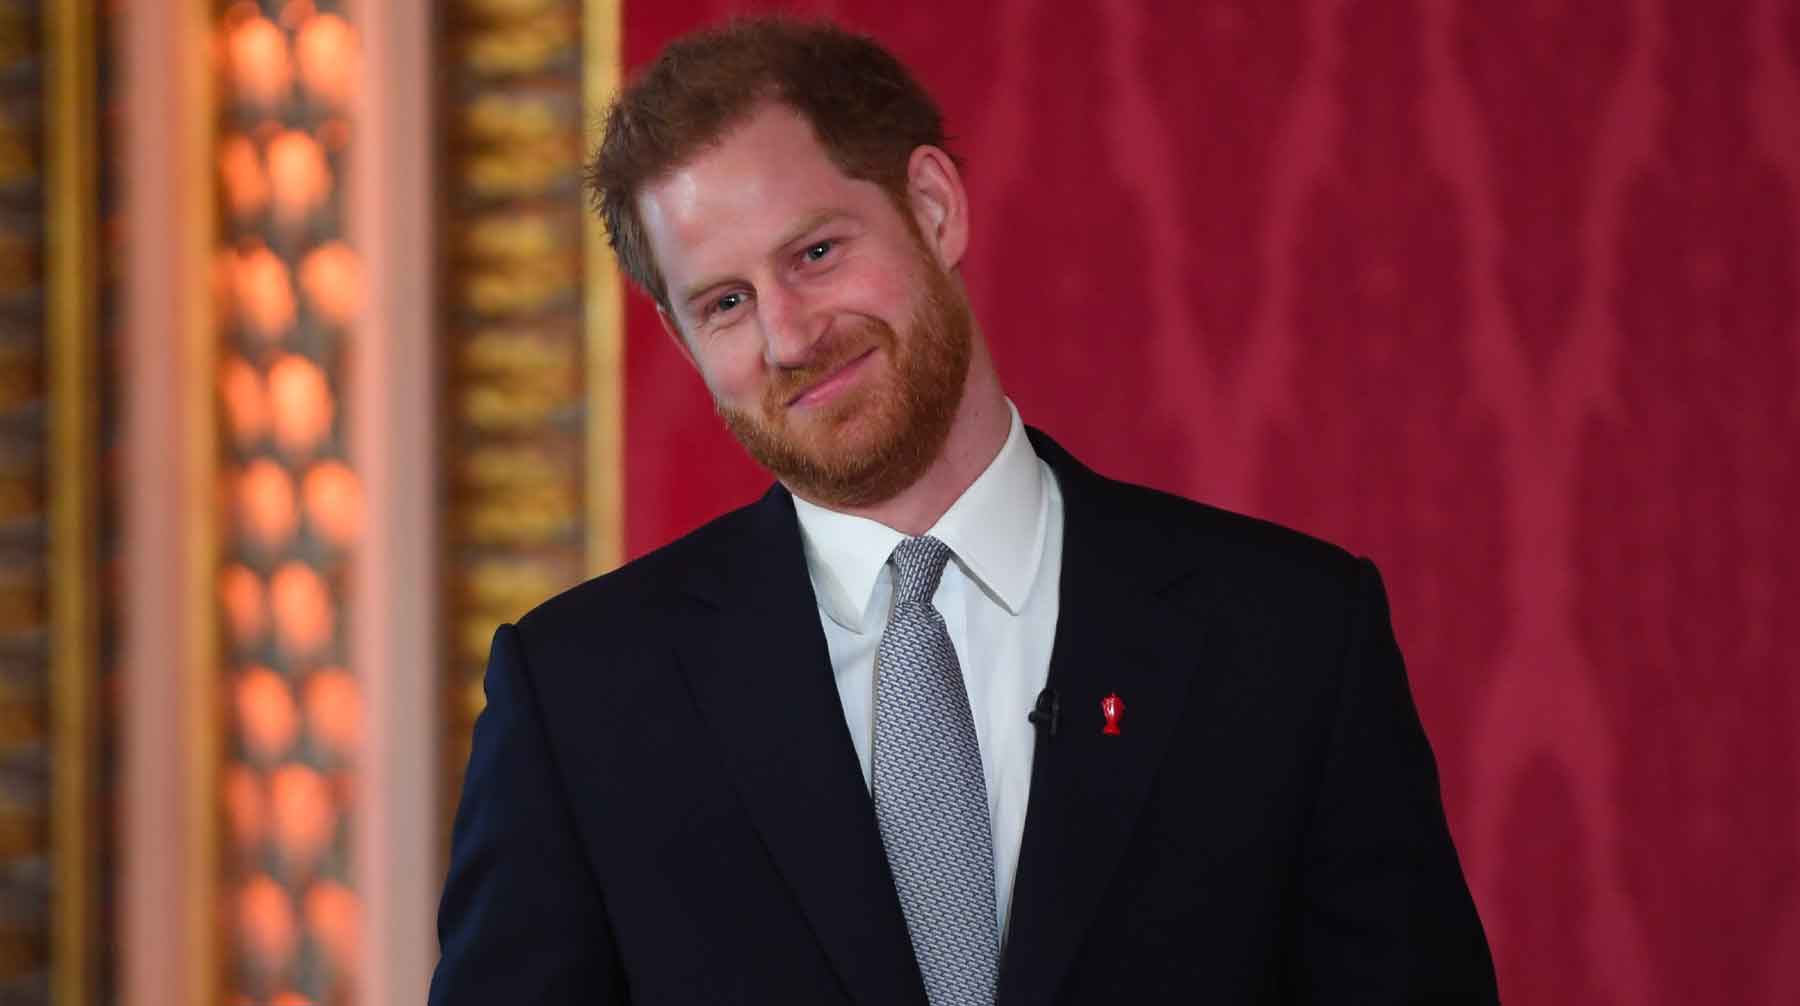 Итоги переговоров с Букингемским дворцом оказались разочаровывающими, признал принц Фото: © GLOBAL LOOK press / I-Images